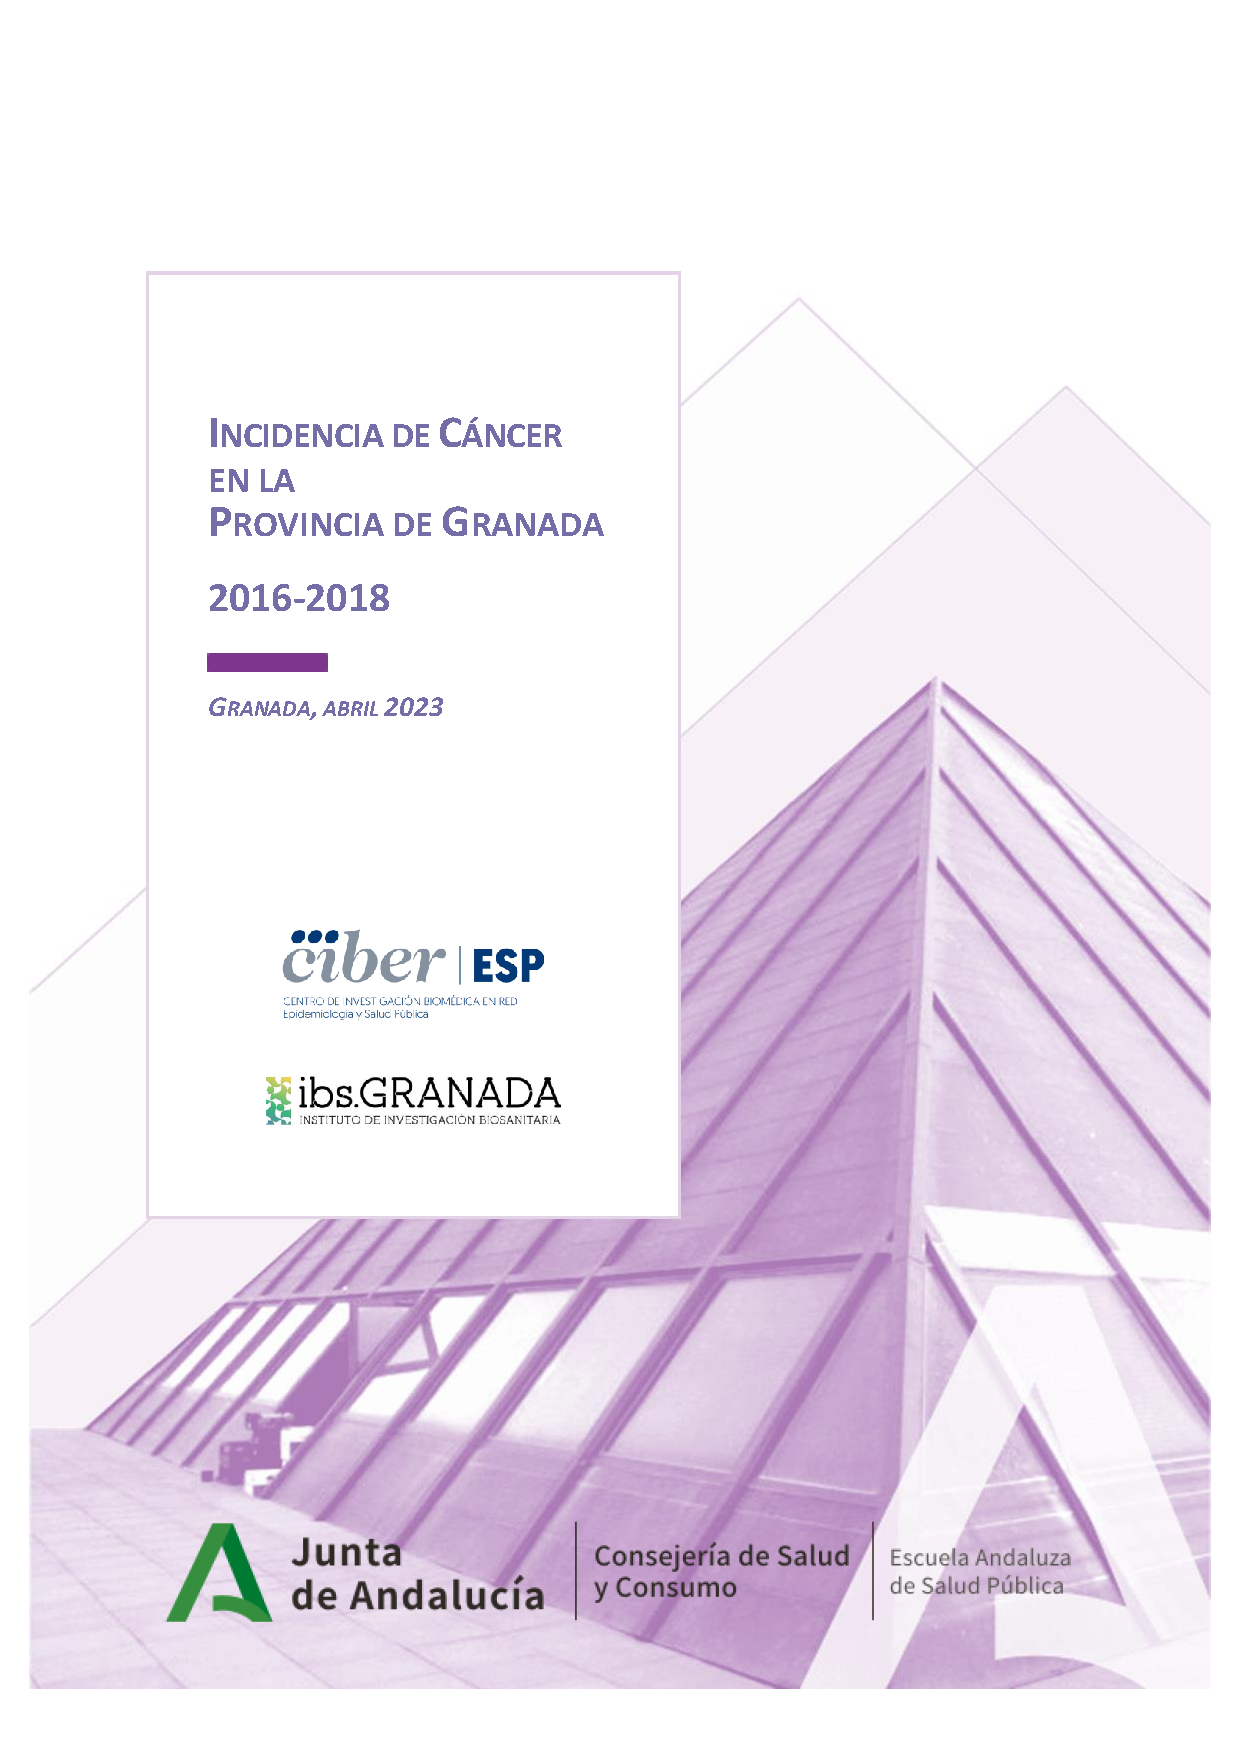 Incidencia de cáncer en la provincia de Granada 2016-2018